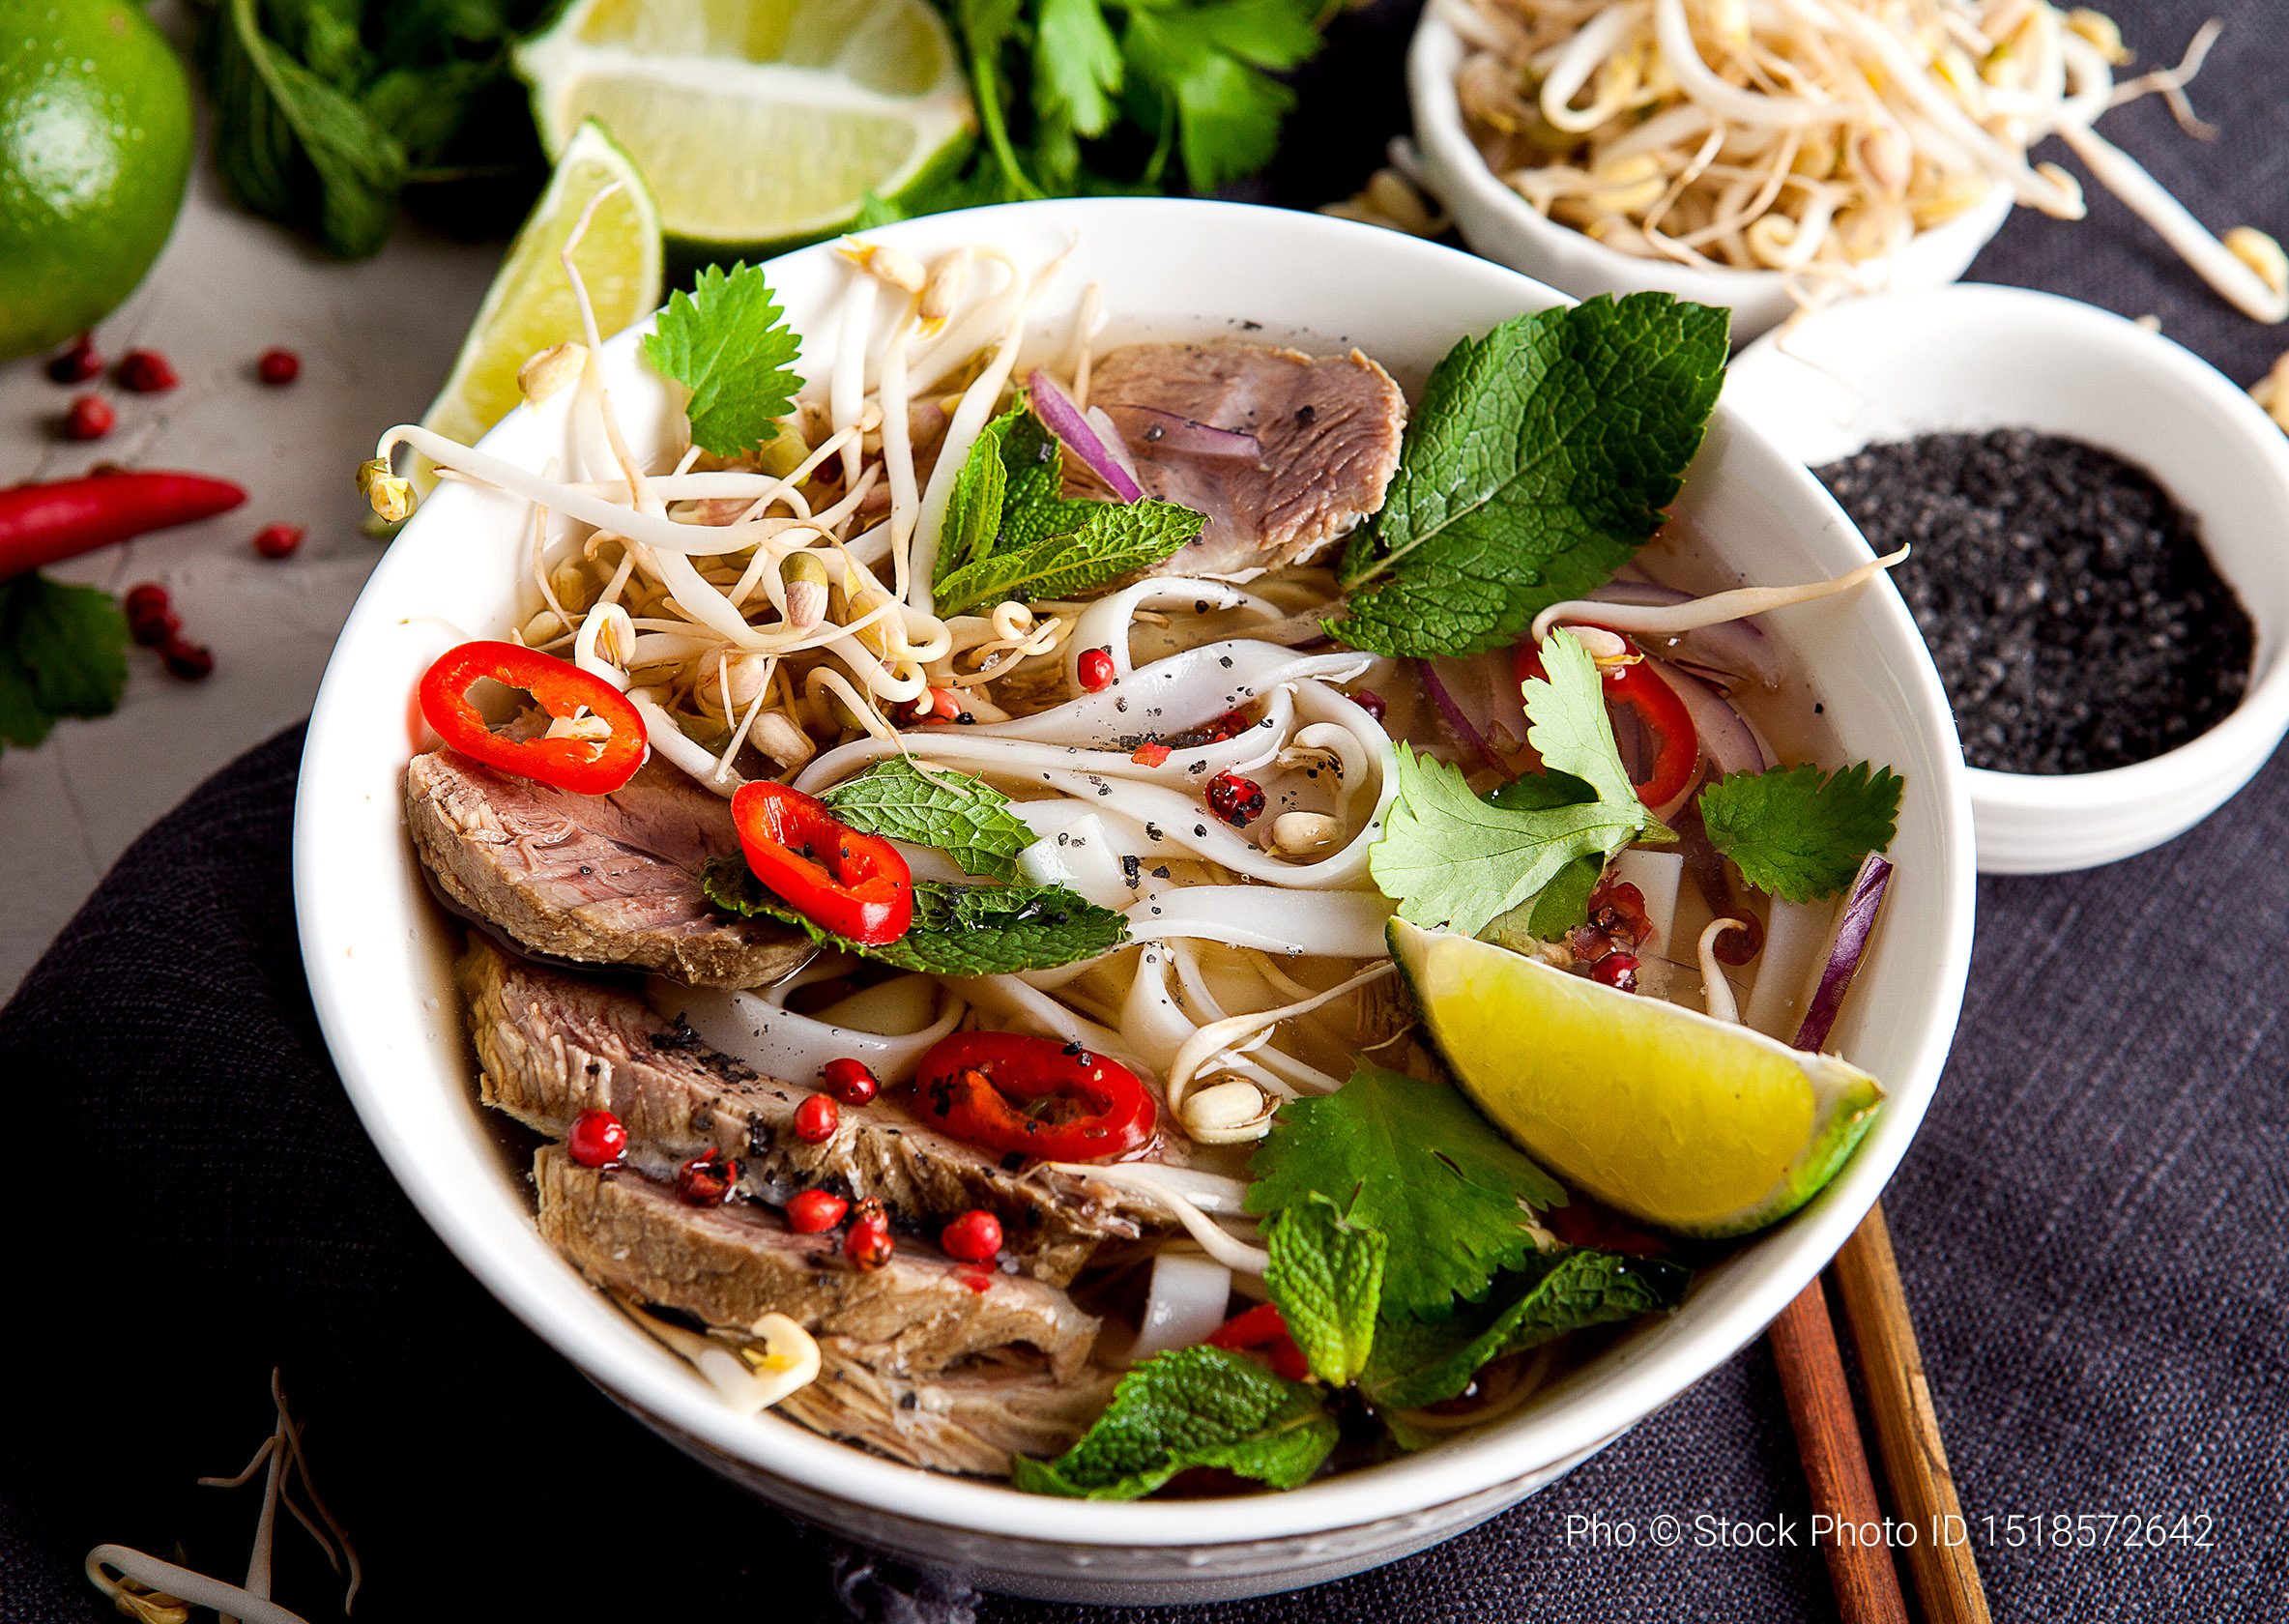 Pho, Vietnamese noodle soup